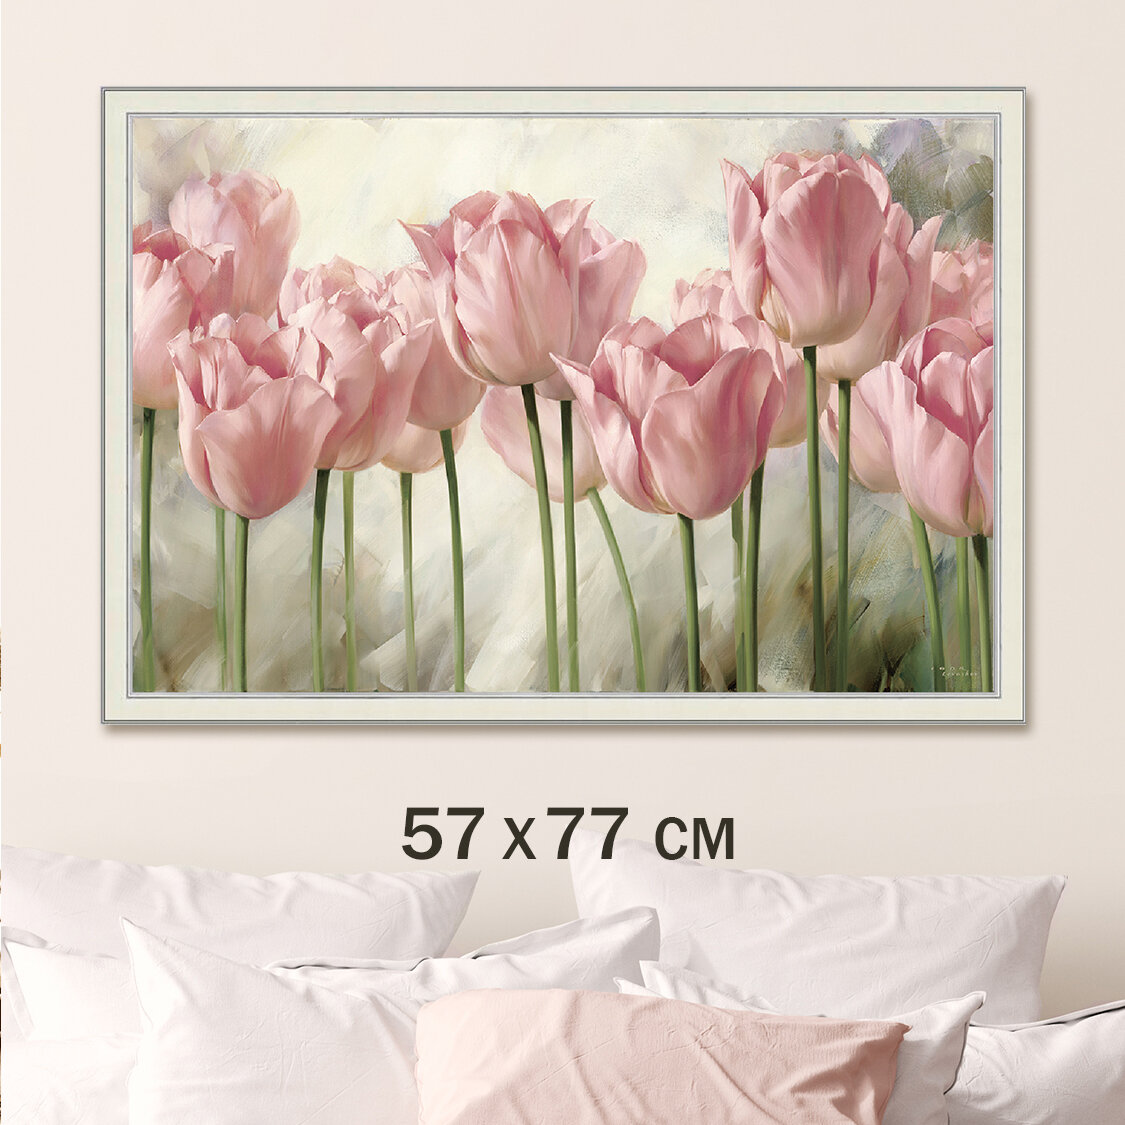 Картина для интерьера "Розовые тюльпаны 2" 57х77 см/Большая интерьерная картина на стену в гостиную, в спальню/цветы/Графис